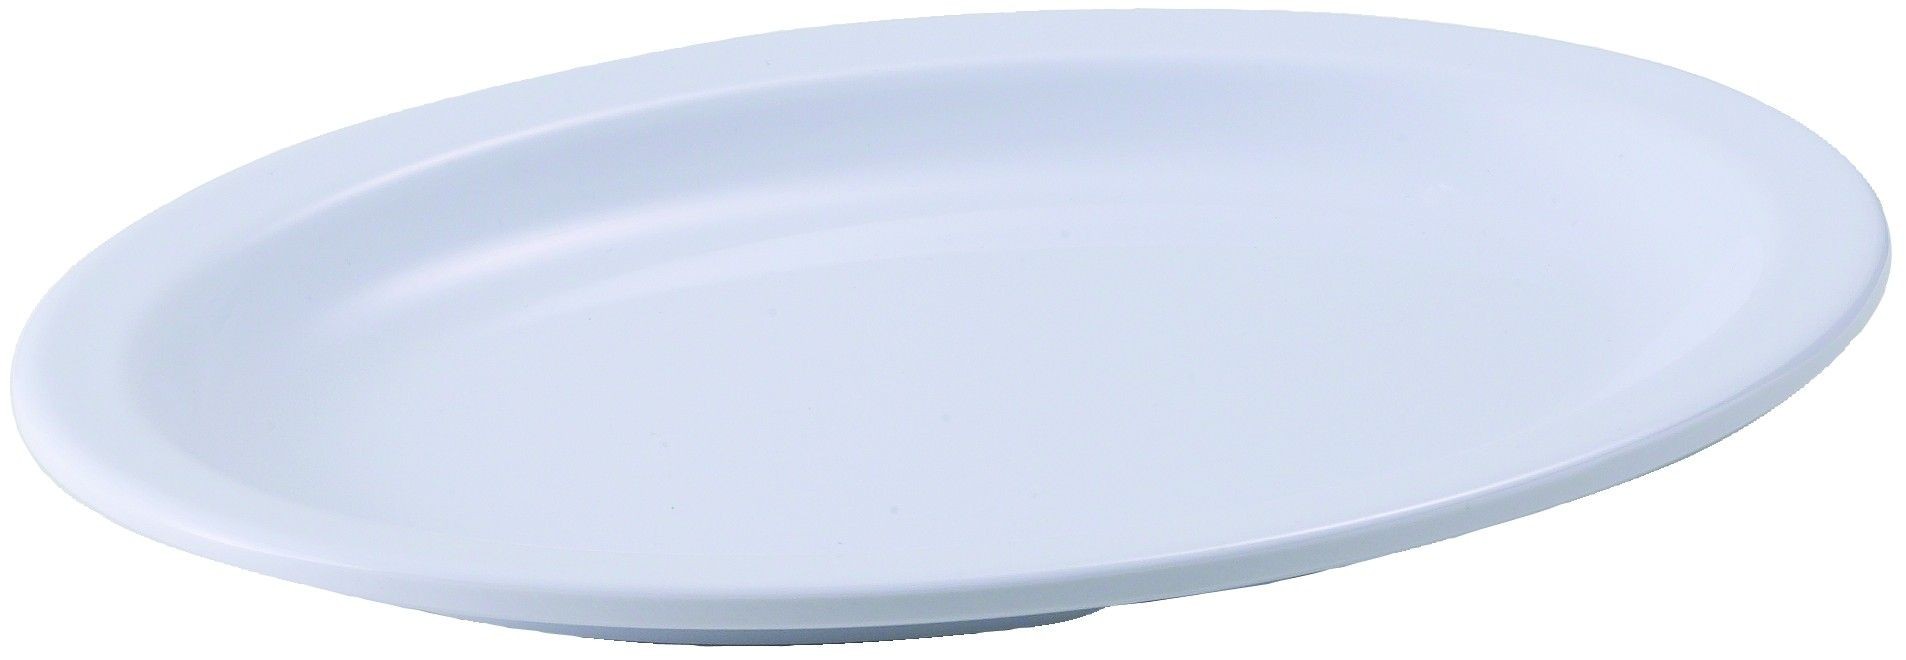 Winco MMPO-96W White Melamine 9 3/4" x 6 3/4" Oval Platter with Narrow Rim